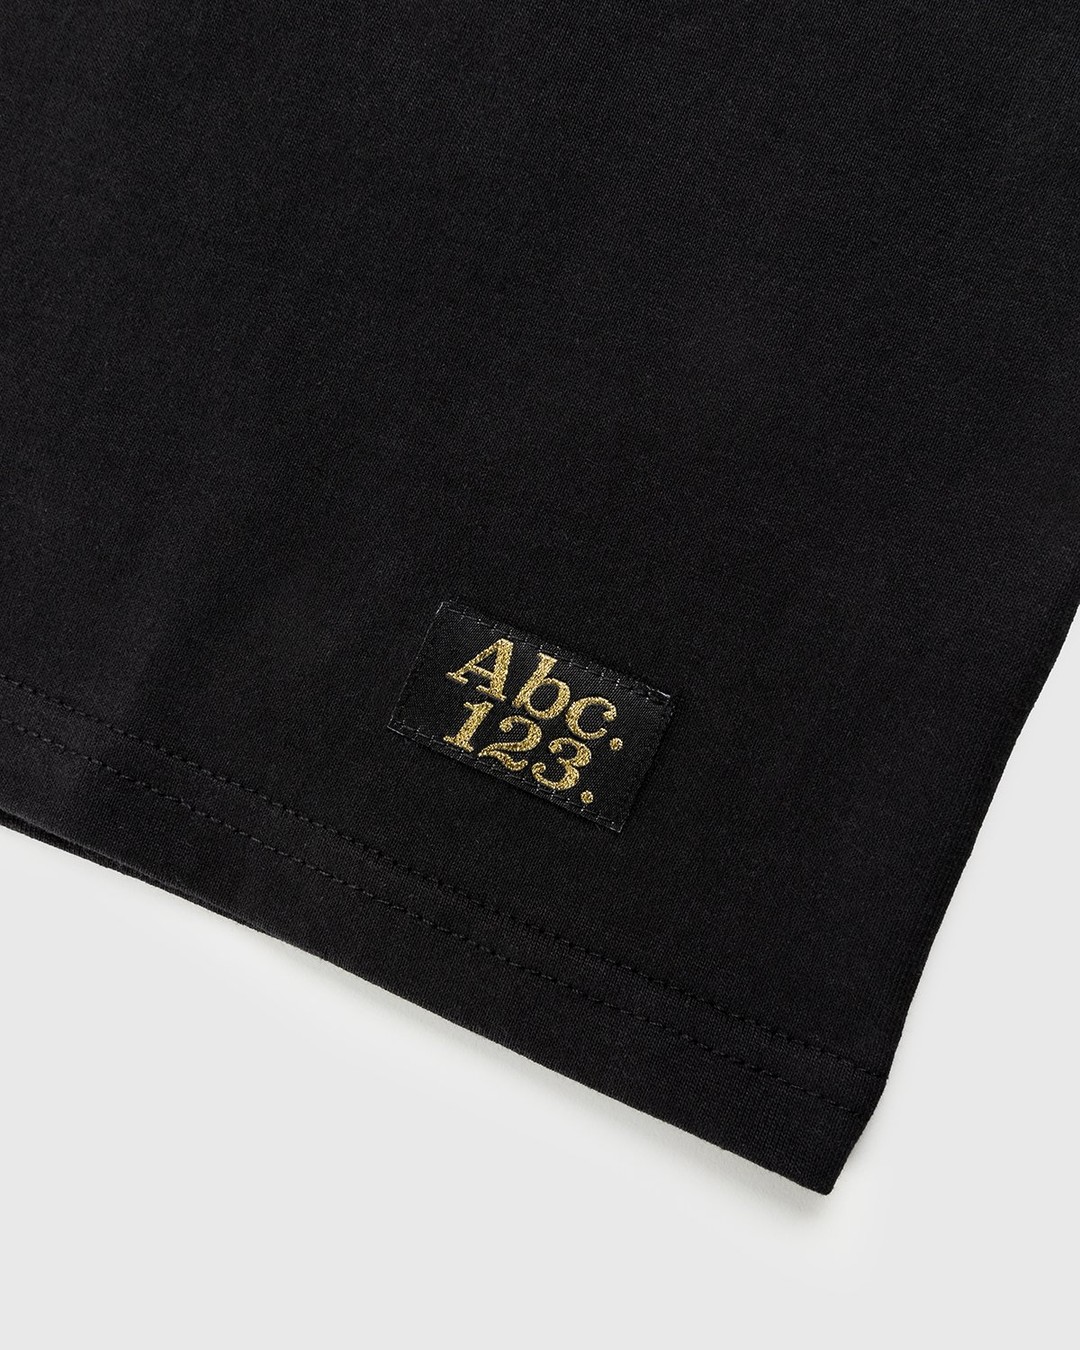 Abc. – Short-Sleeve Pocket Tee Anthracite - T-Shirts - Black - Image 6